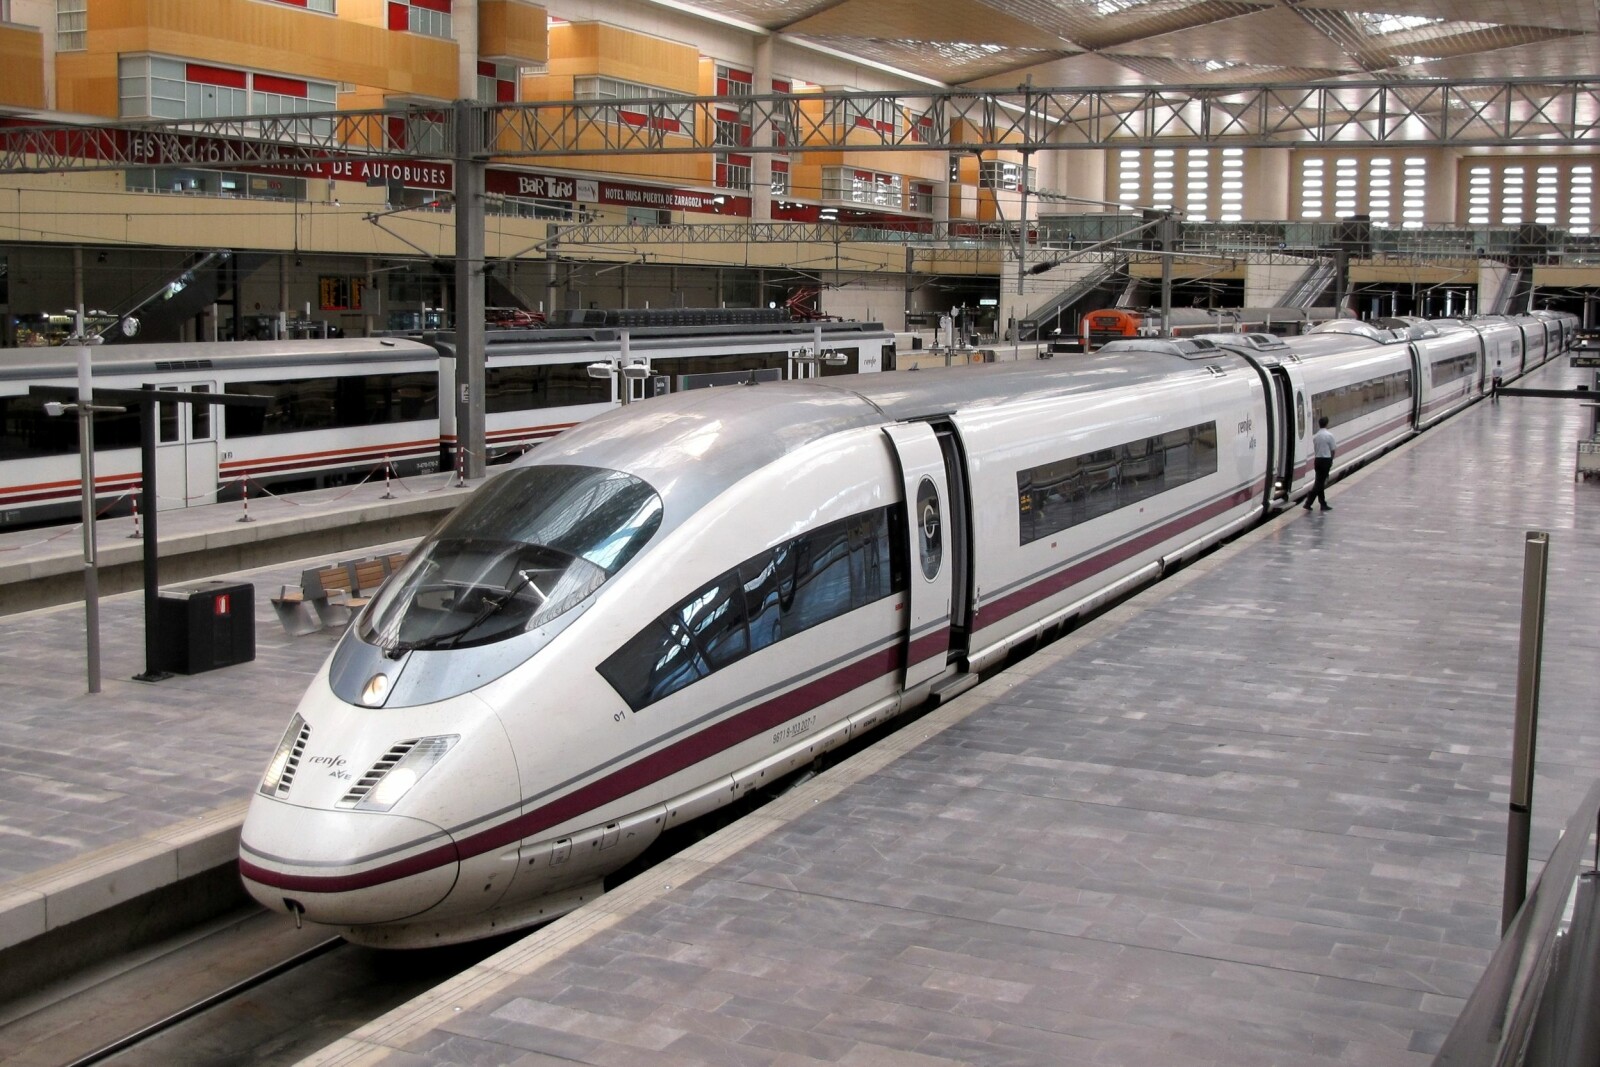 <b>REKORDTOG:</b> Rekorden for et ikke-modifisert tog er 403,7 km/t og ble satt av et Siemens Velaro E-tog på linjen mellom Madrid og Zaragoza i Spania.